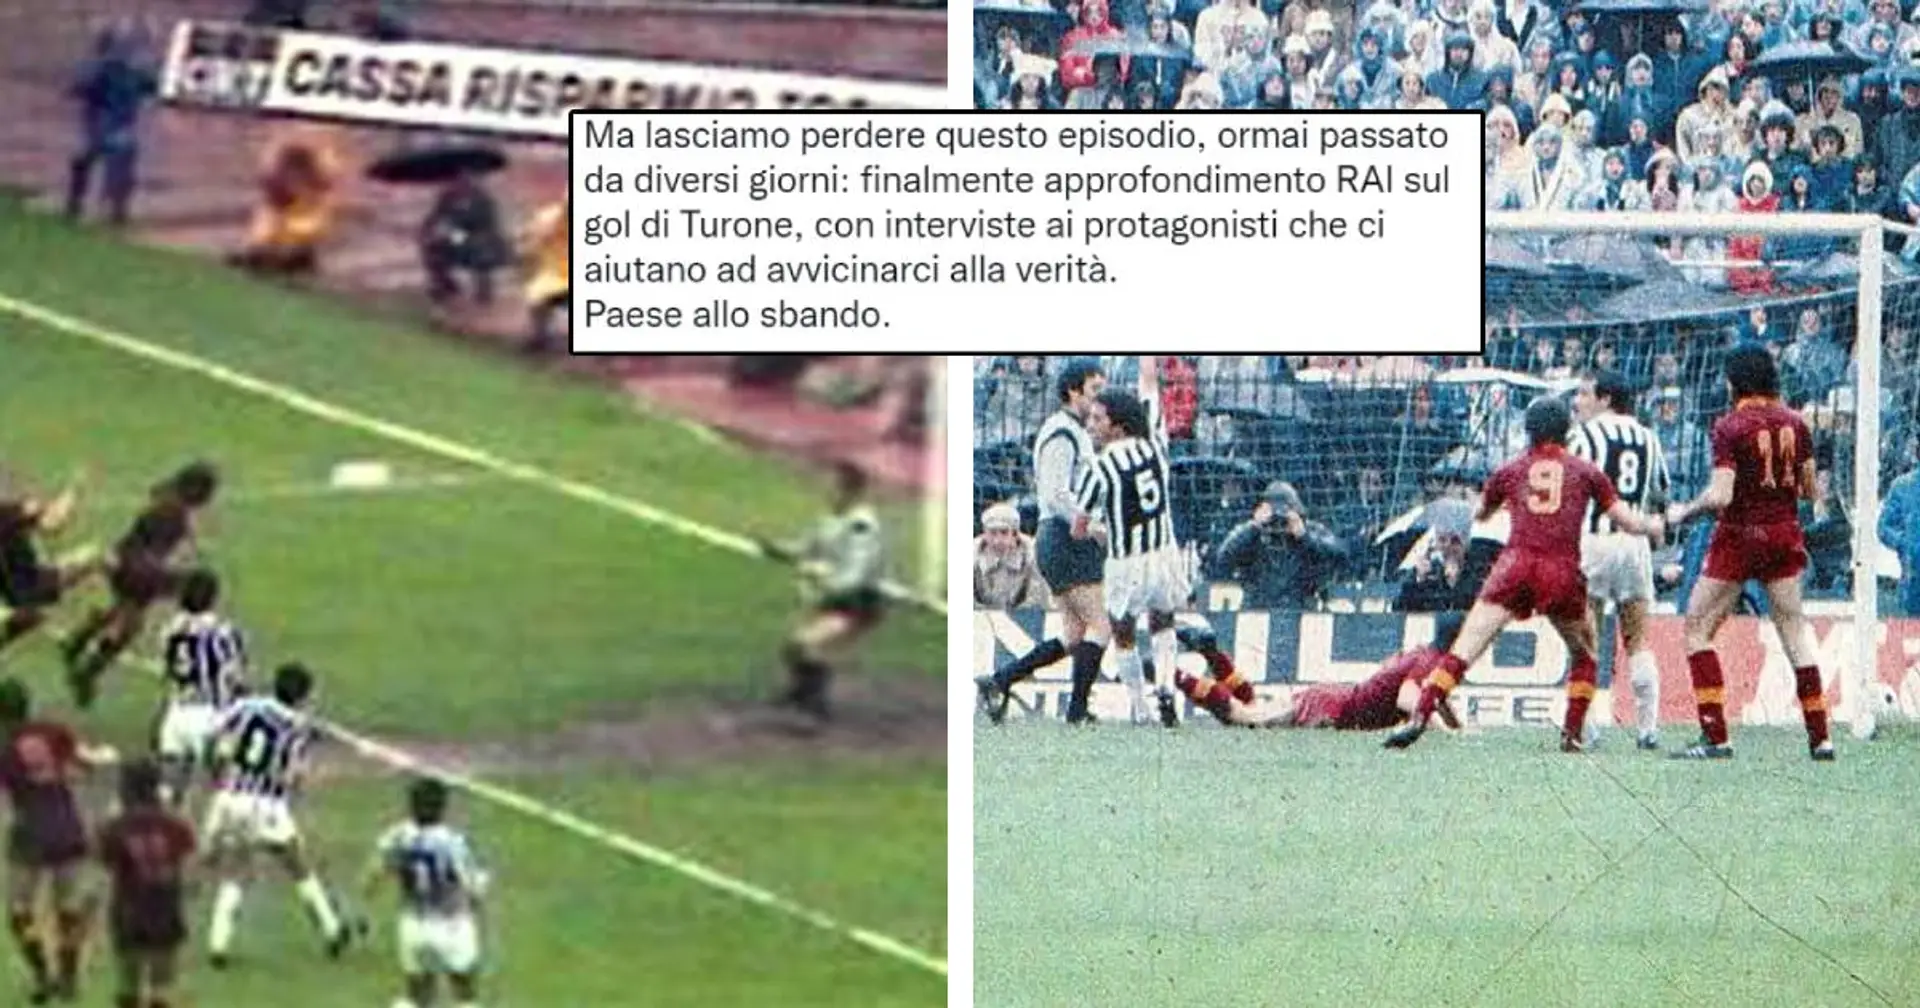 "Paese allo sbando": la reazione dei tifosi della Juve al film sul gol di Turone annullato alla Roma nel 1981